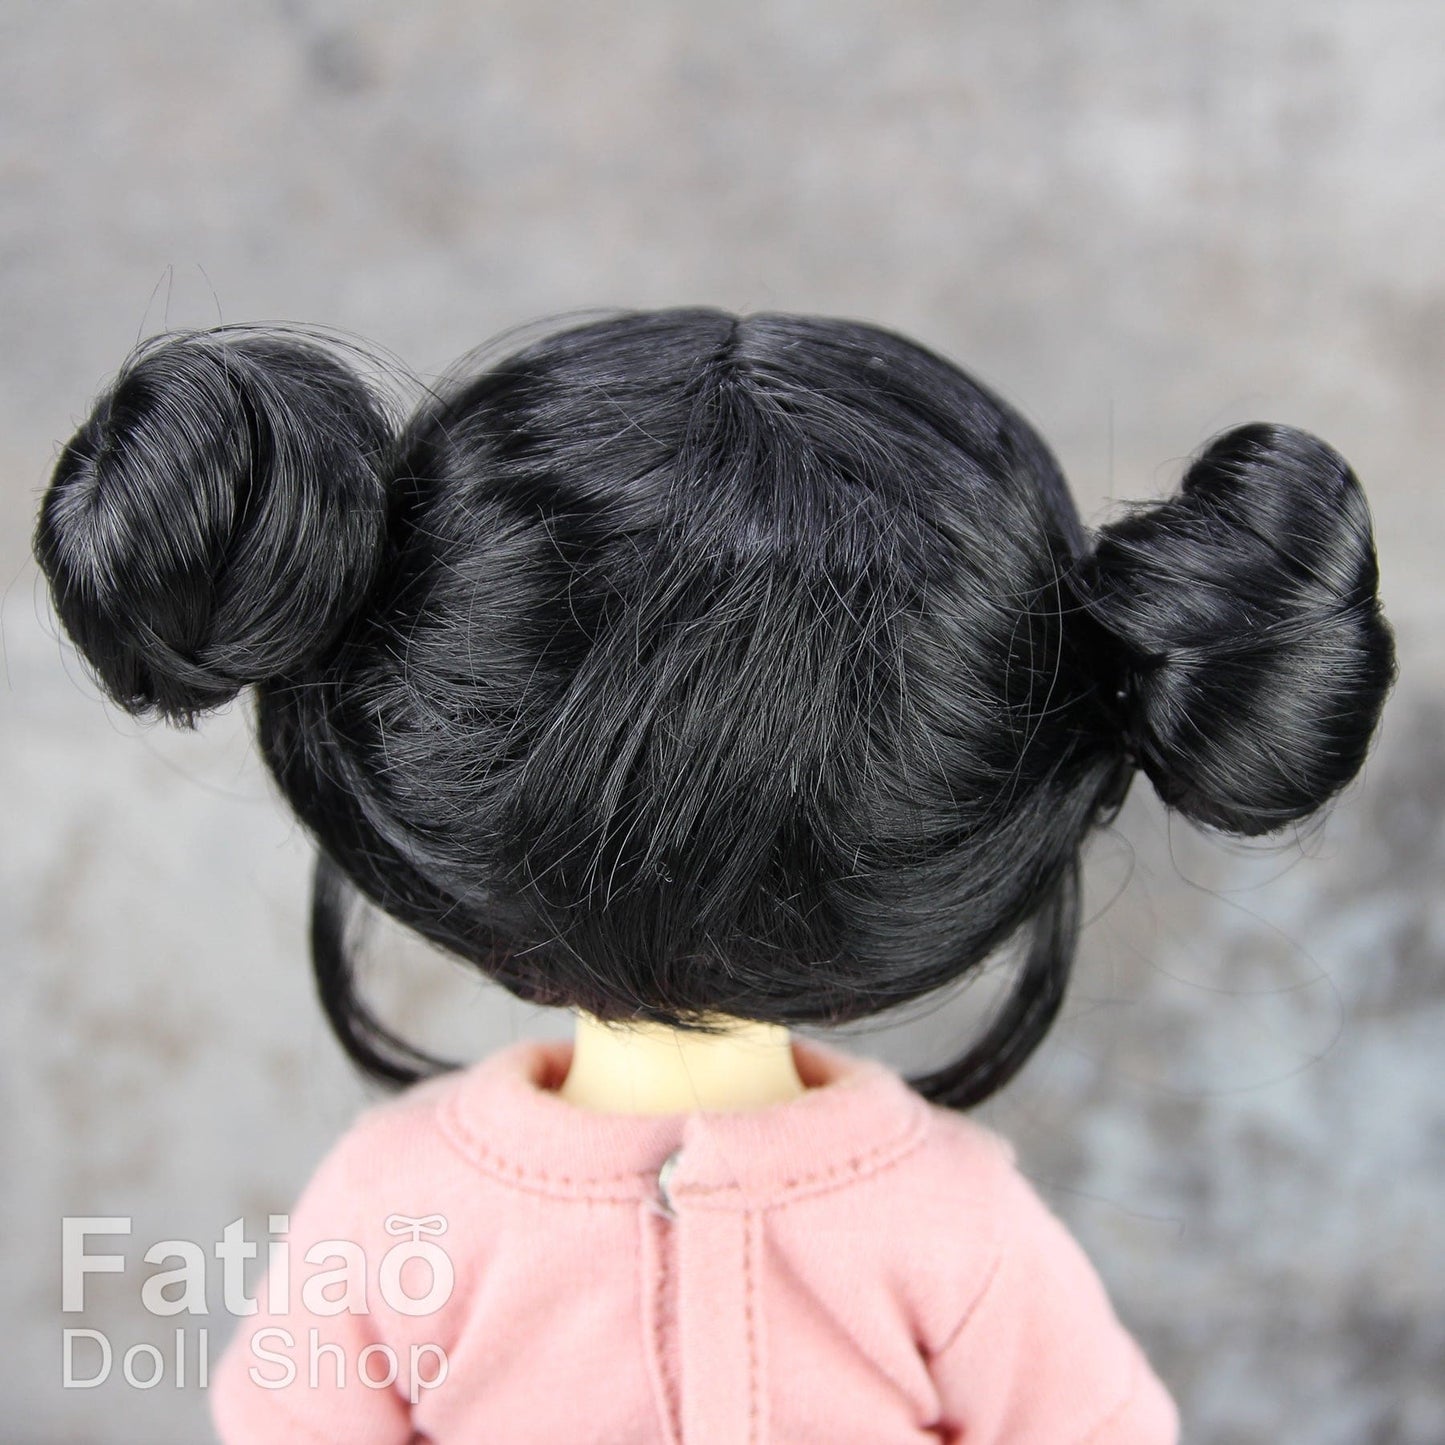 【Fatiao Doll Shop】FWF-742 娃用假髮 多色 / 6-7吋 BJD 6分 iMda2.6